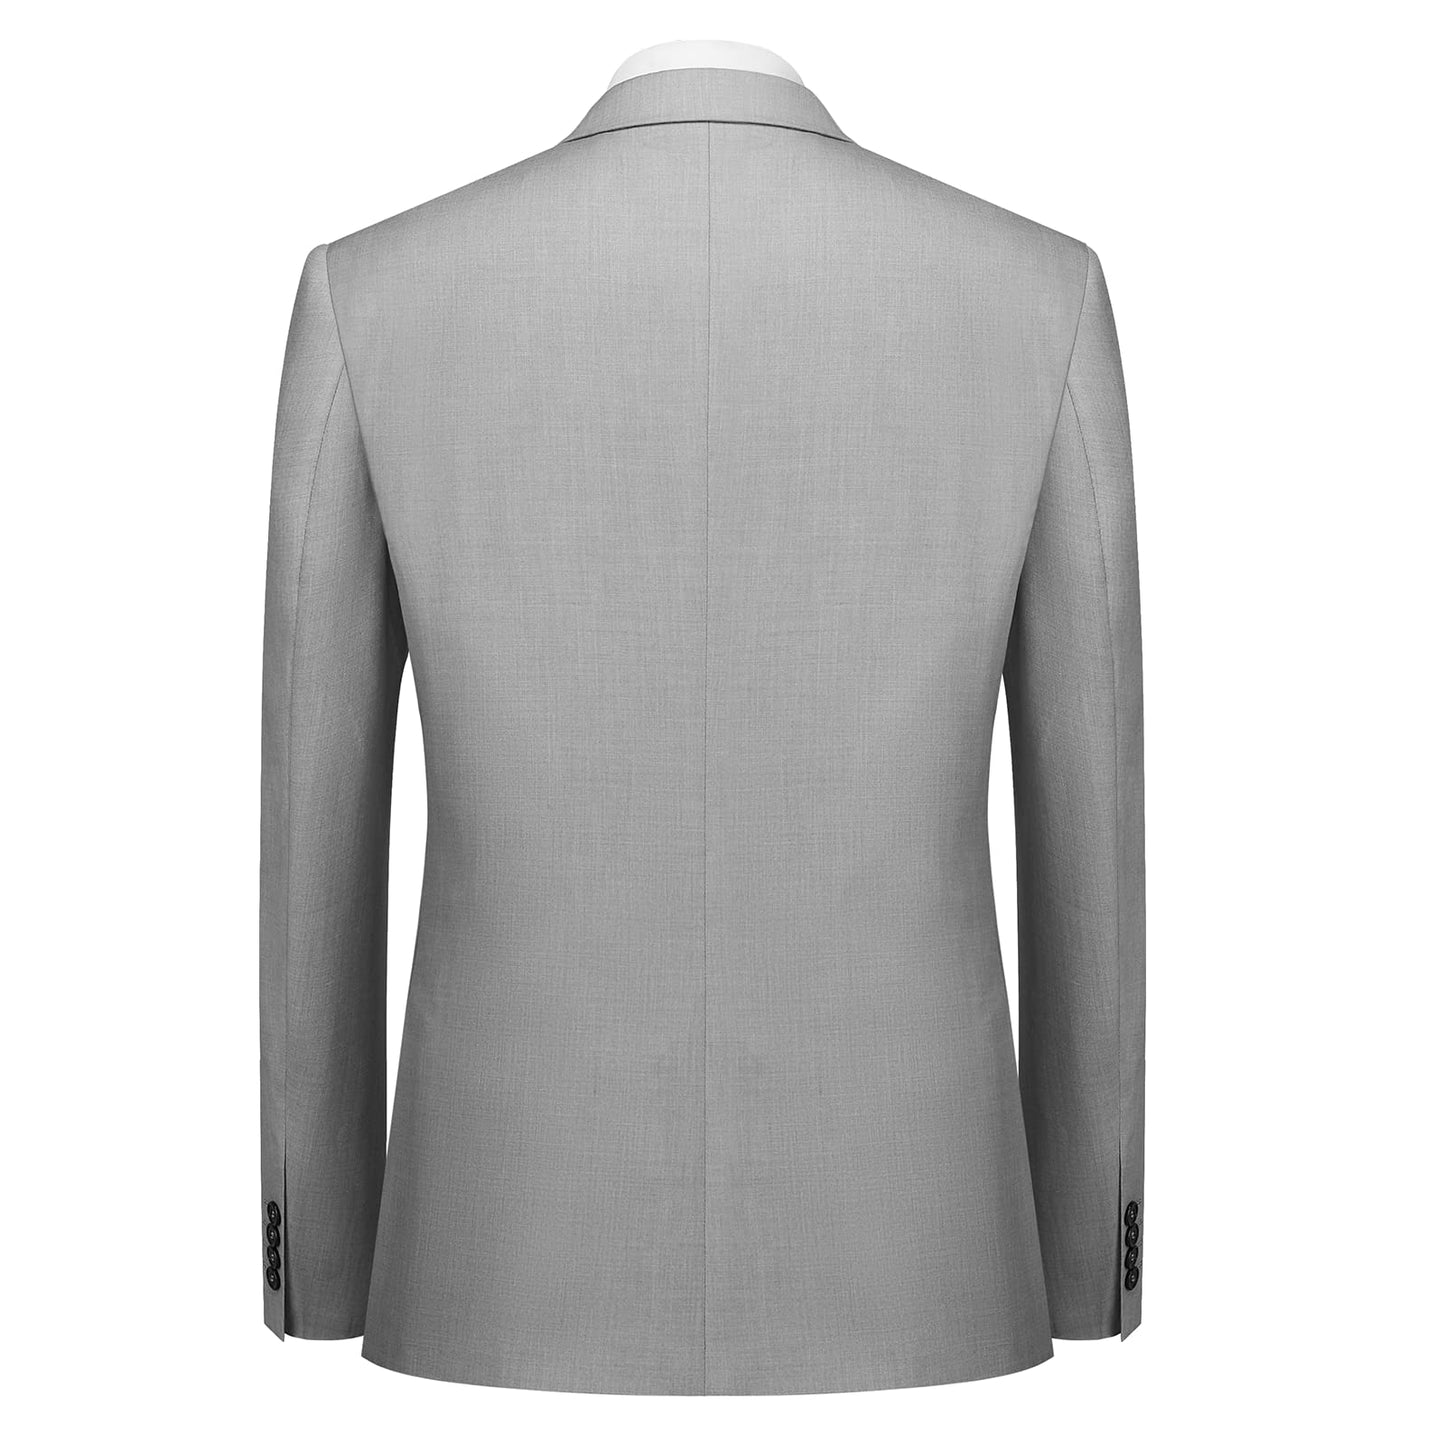 Cooper & Nelson Men's Suit Slim Fit, 3 Piece Suits for Men, One Button Jacket Vest Pants with Tie, Tuxedo Set Light Grey XS